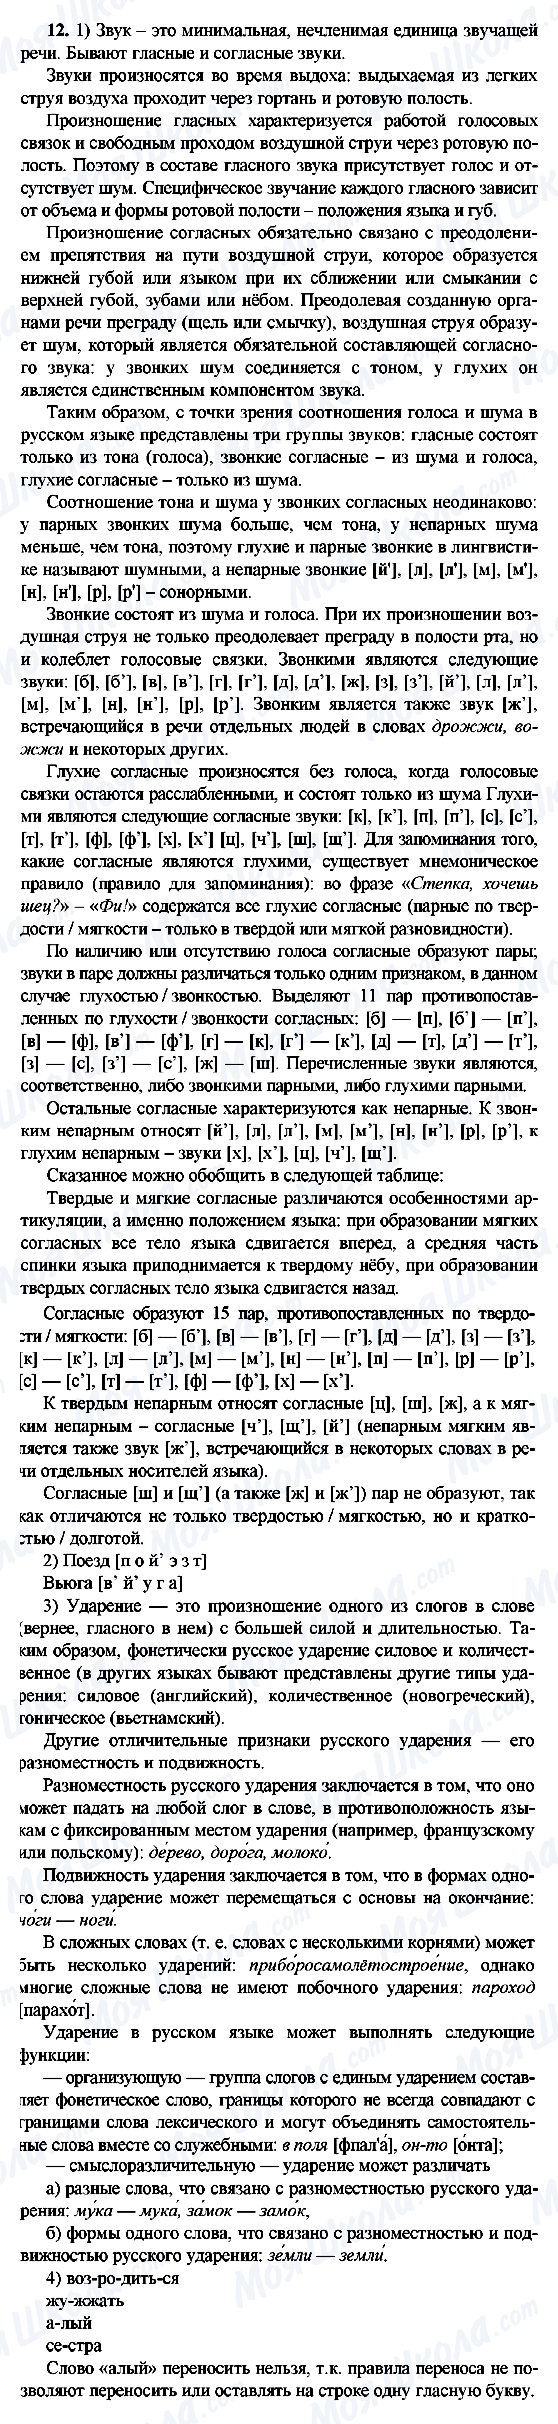 ГДЗ Русский язык 9 класс страница 12